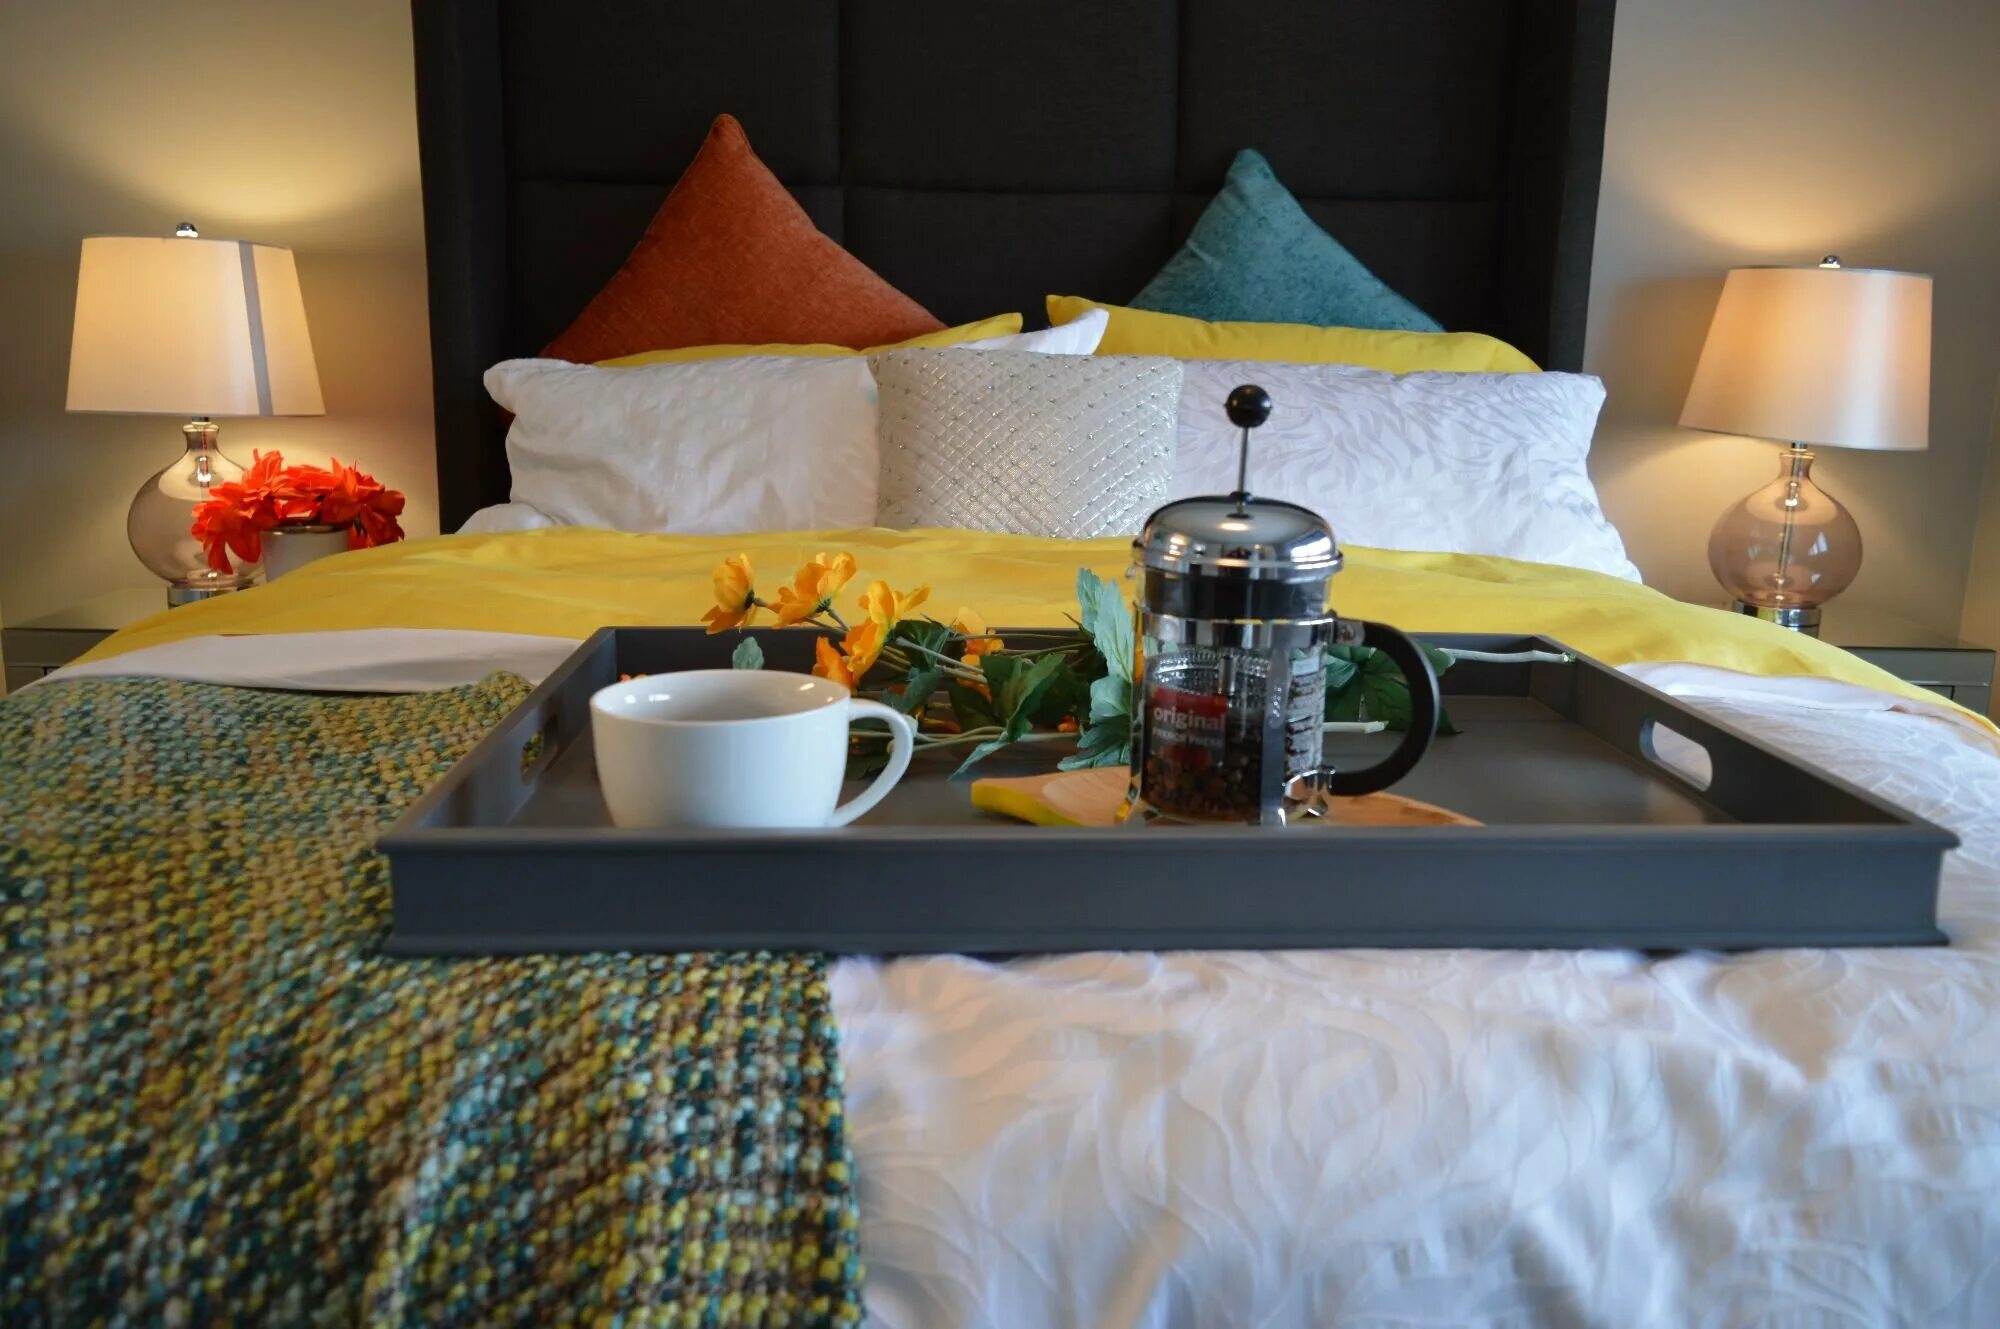 Мужчина в номере отеля. Кровать в отеле с завтраком. Кровати для гостиниц. Завтрак в постель в отеле. Завтрак в кровать.